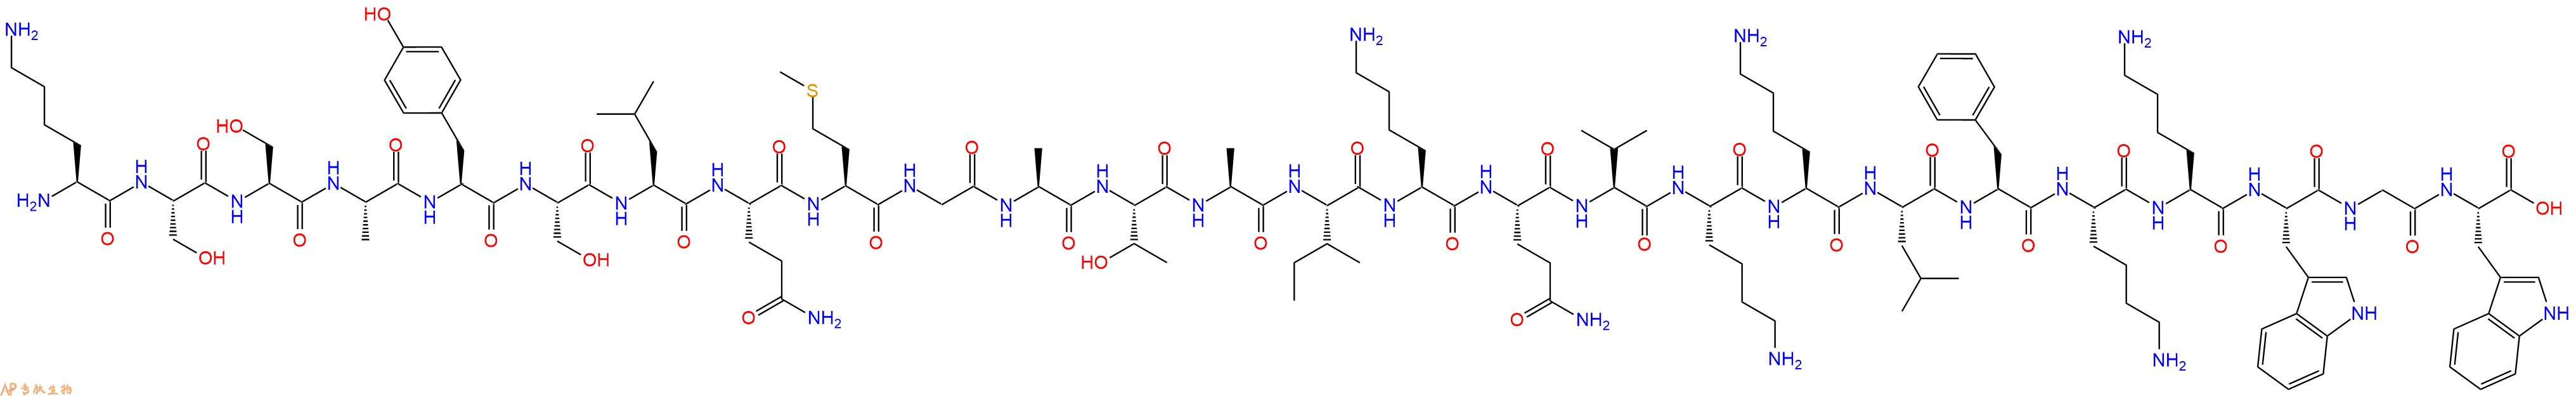 专肽生物产品植物乳杆菌素A、Plantaricin A